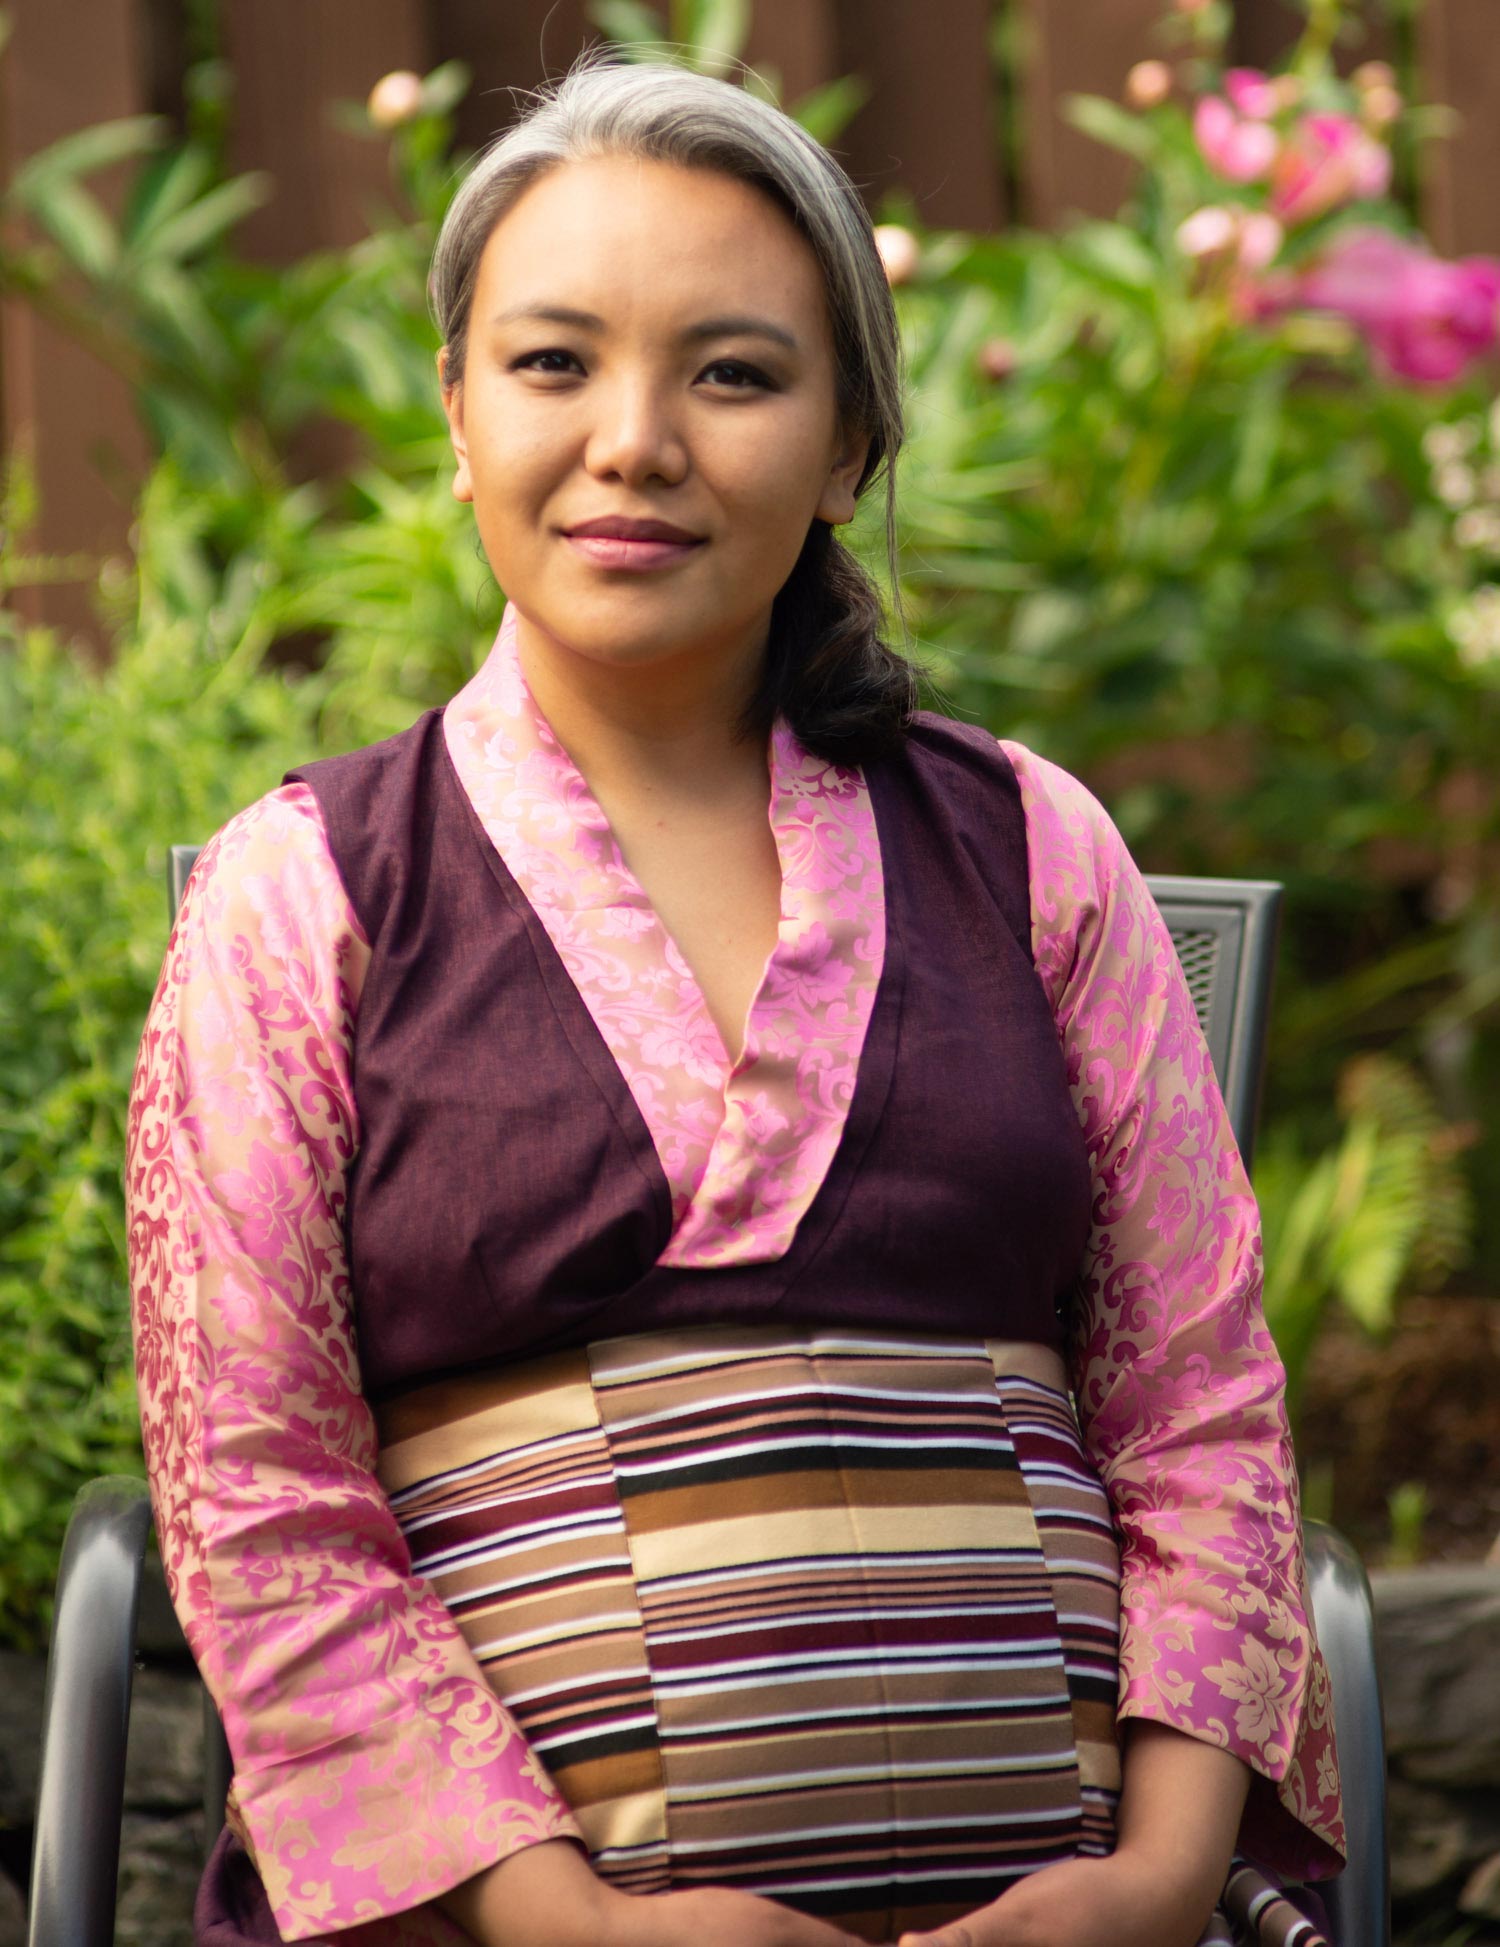 Anthropologist Pasang Yangjee Sherpa